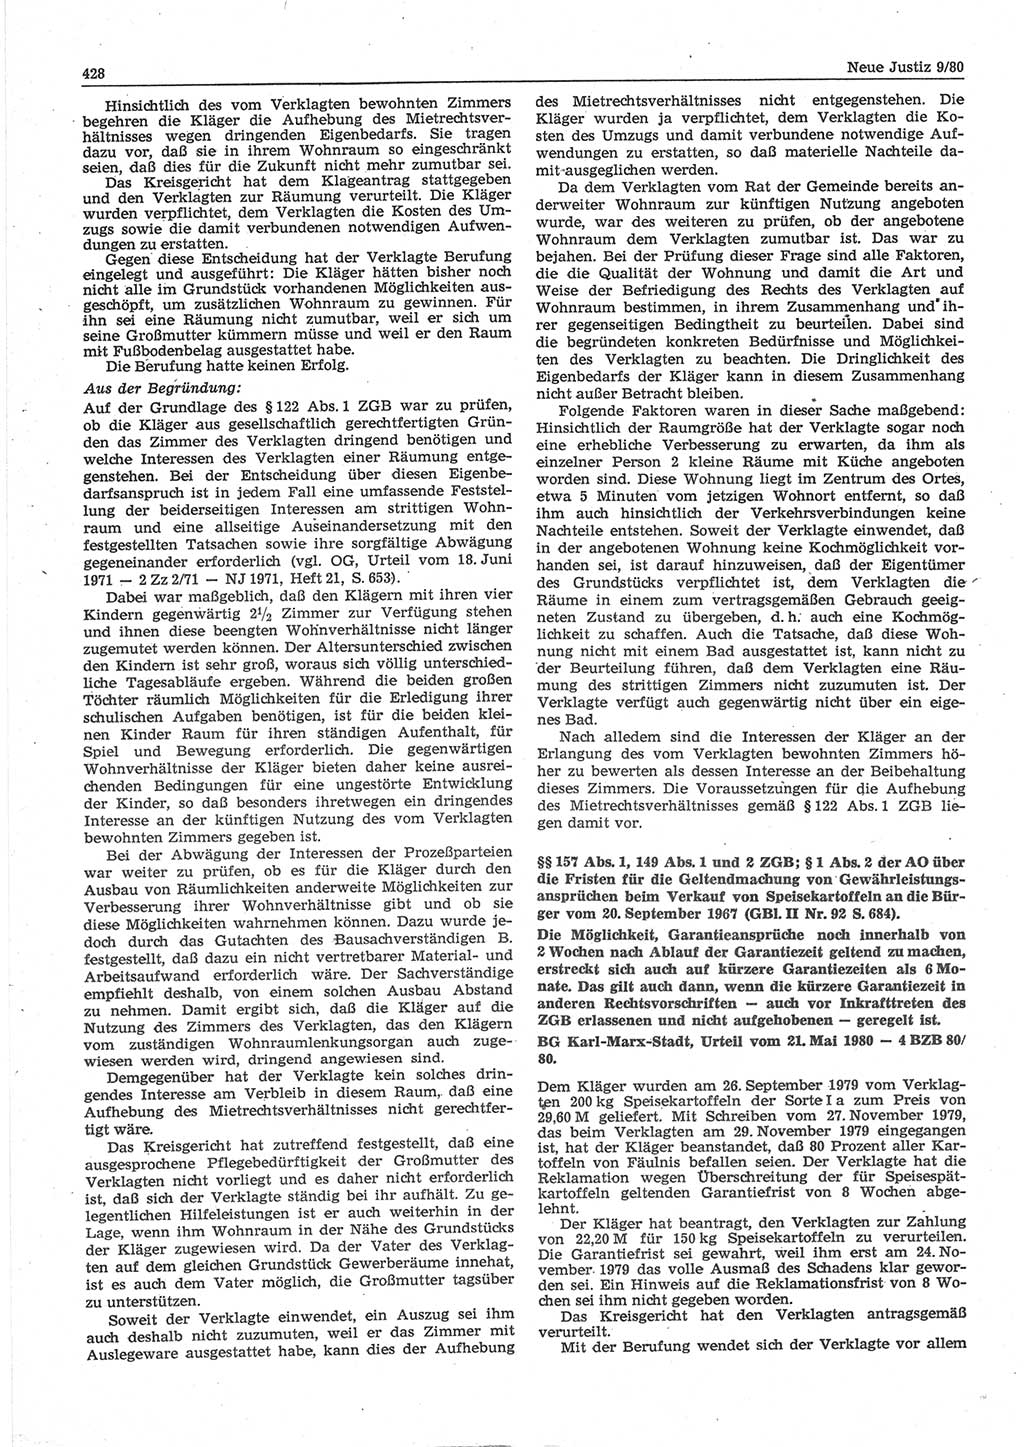 Neue Justiz (NJ), Zeitschrift für sozialistisches Recht und Gesetzlichkeit [Deutsche Demokratische Republik (DDR)], 34. Jahrgang 1980, Seite 428 (NJ DDR 1980, S. 428)